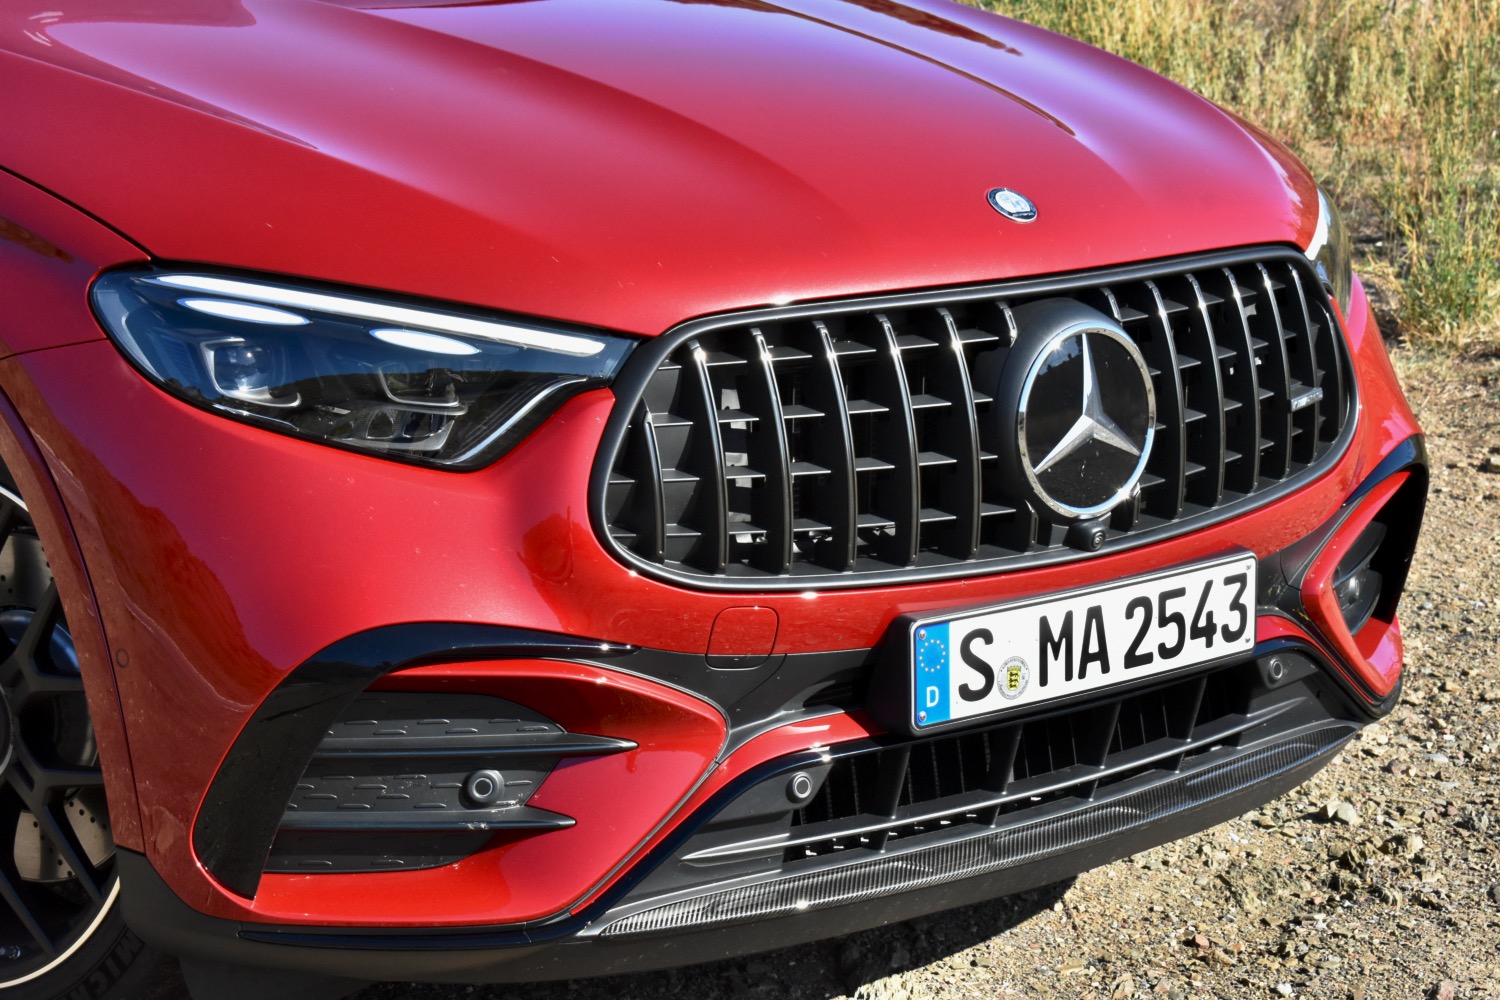 プラグイン機能とドラッグスター機能を兼ね備えた Mercedes-AMG GLC63 は、さまざまな顔を持つ SUV です